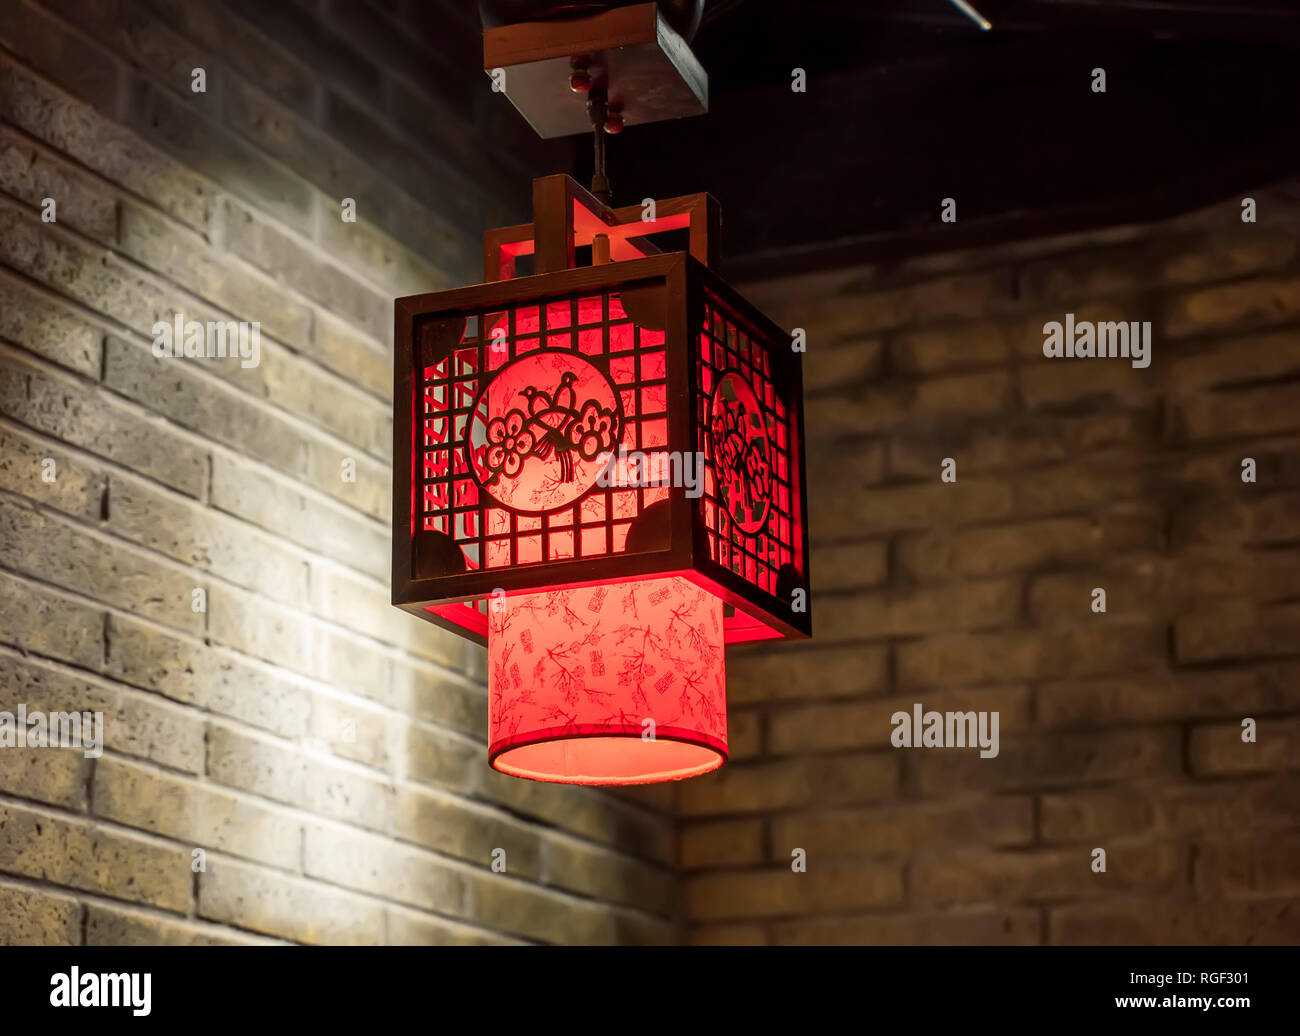 Tradition décoration lanternes de moyenne,Chinois meilleurs vœux et bonne chance pour le prochain nouvel an chinois Banque D'Images